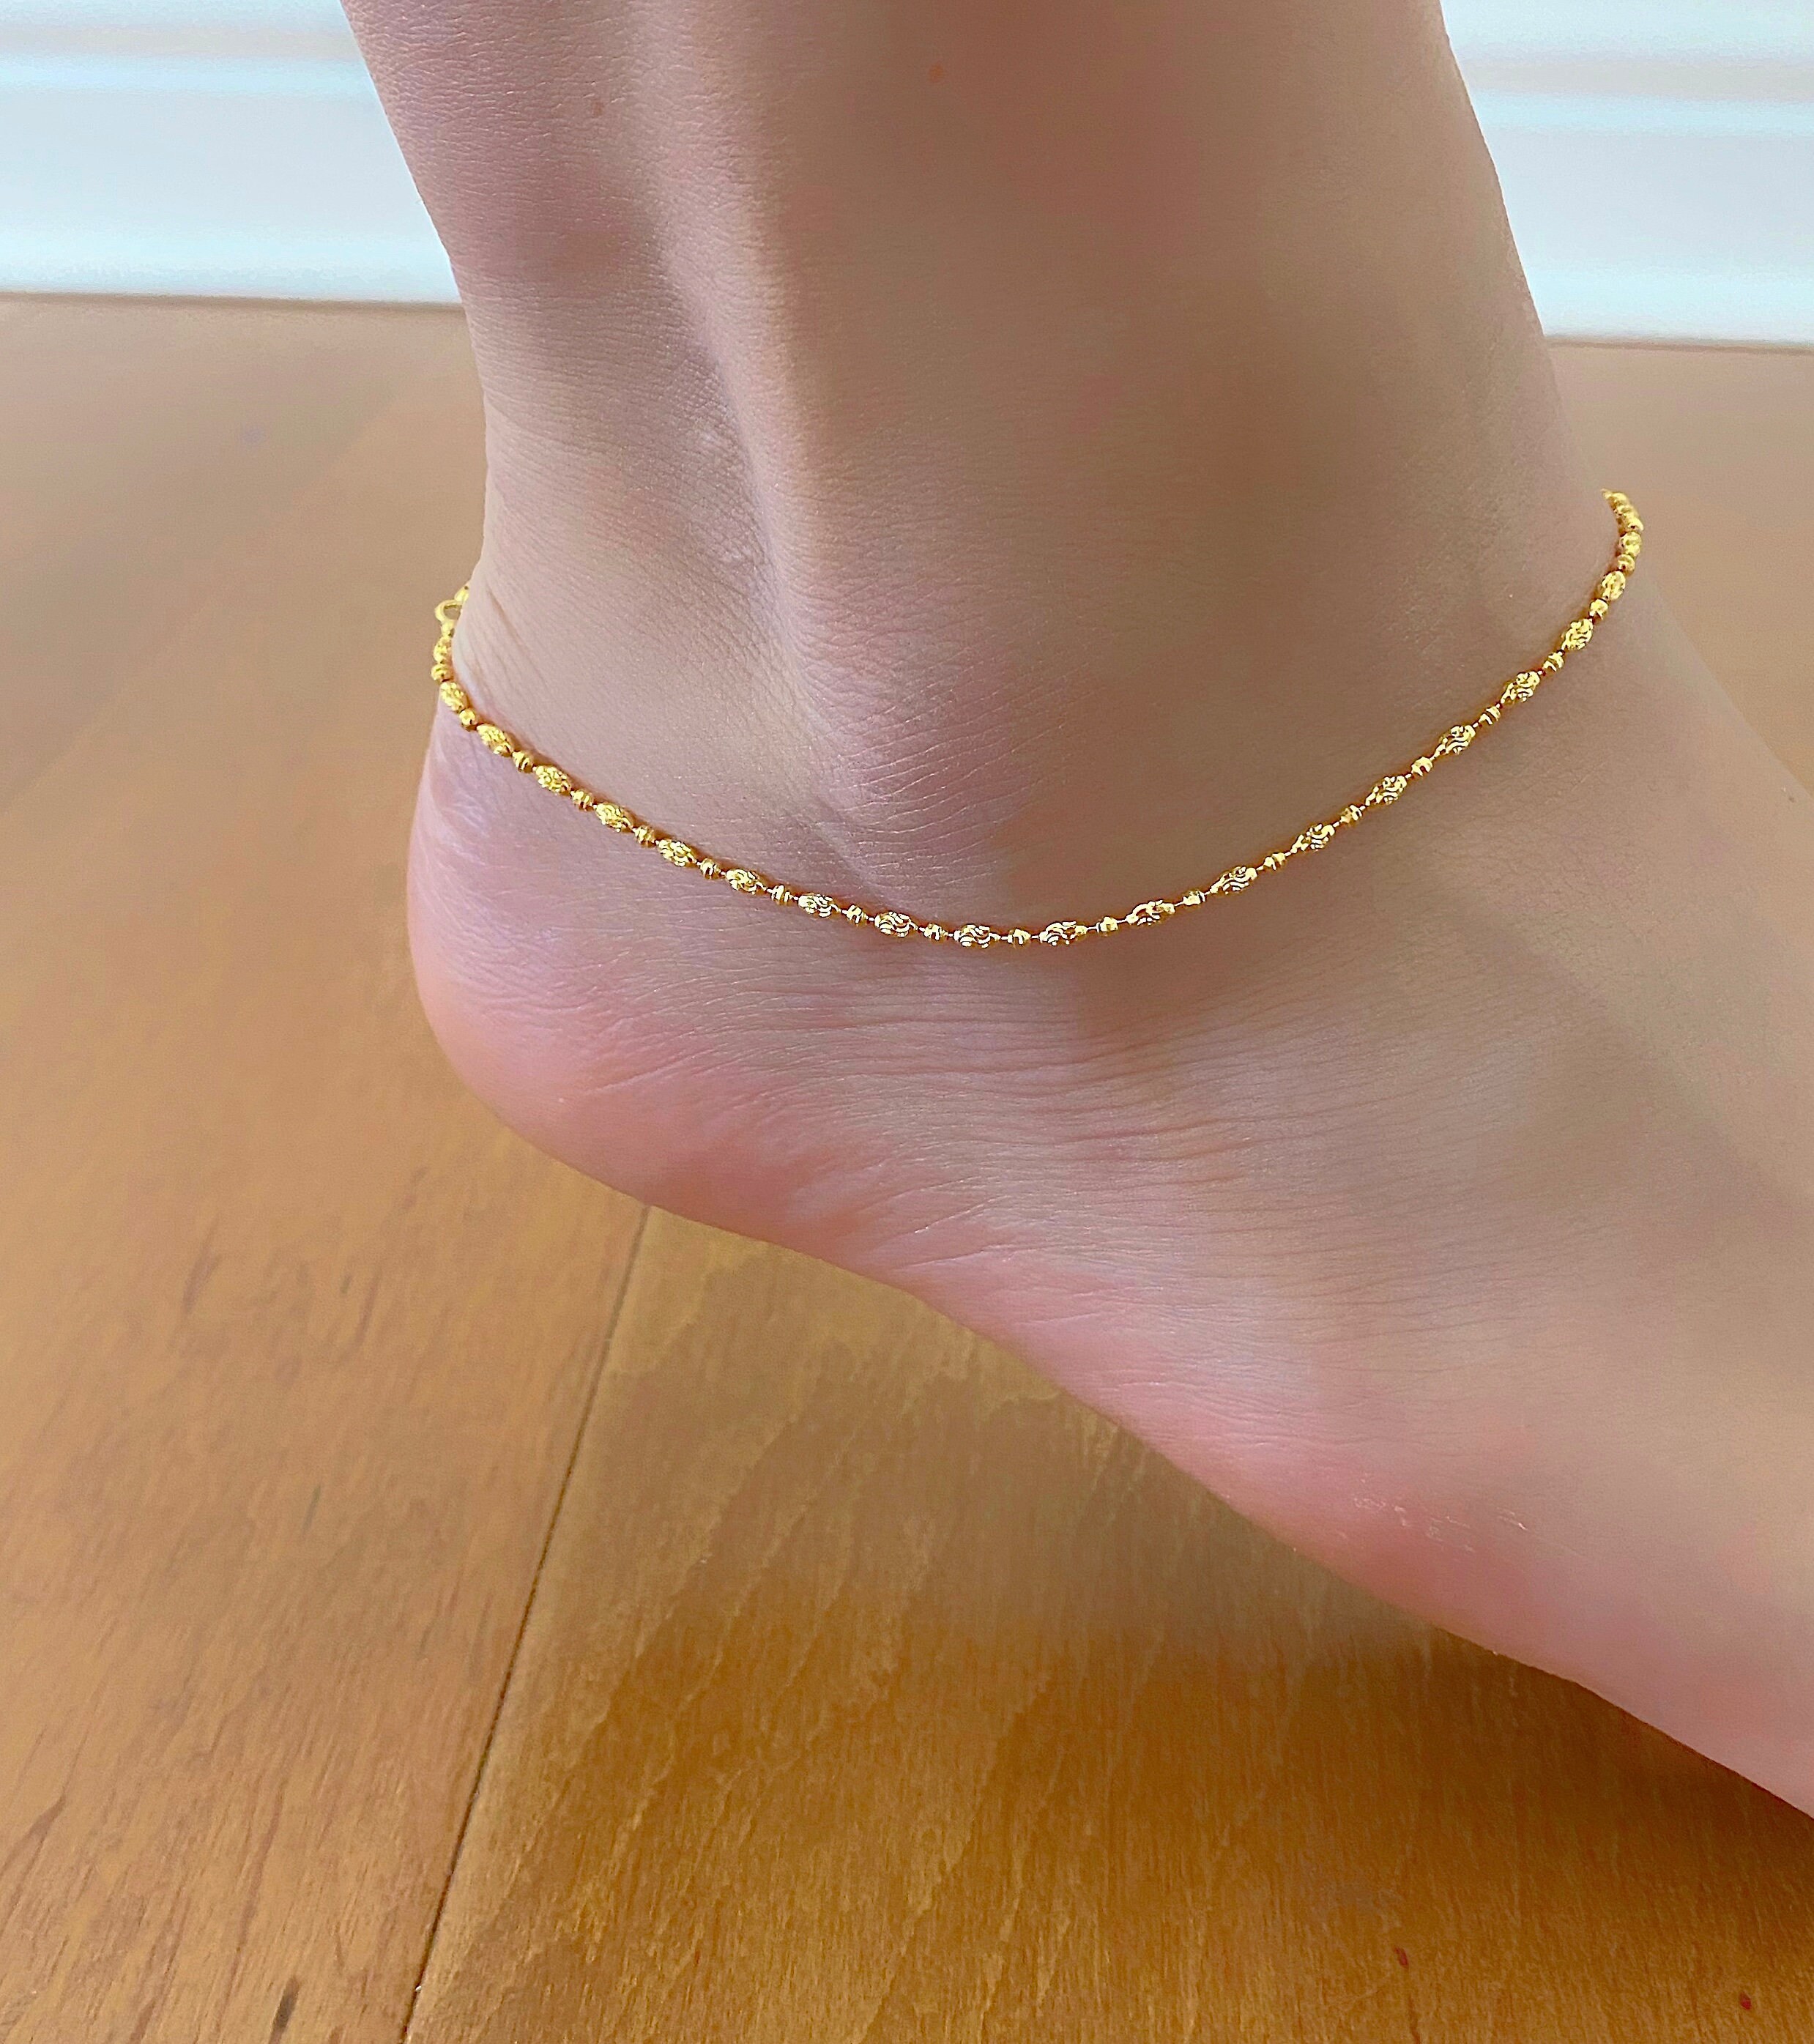 14k Solid Gold Mariner Link Chain 16mm Anklet Ankle Bracelet 11 inch  eBay